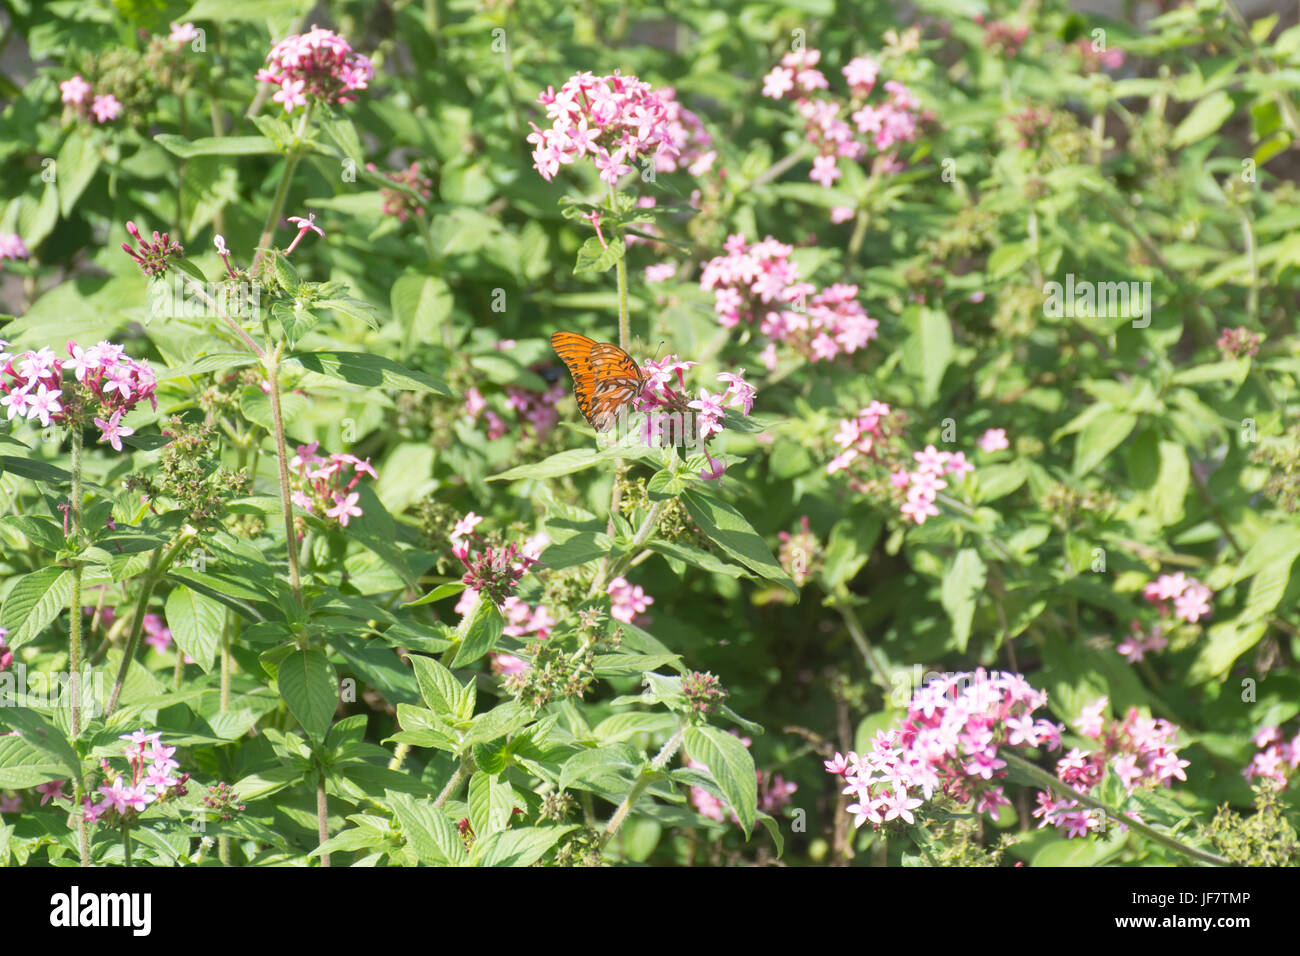 Gulf fritillary butterfly (Agraulis vanillae) feeding on pentas lanceolata flowers Stock Photo